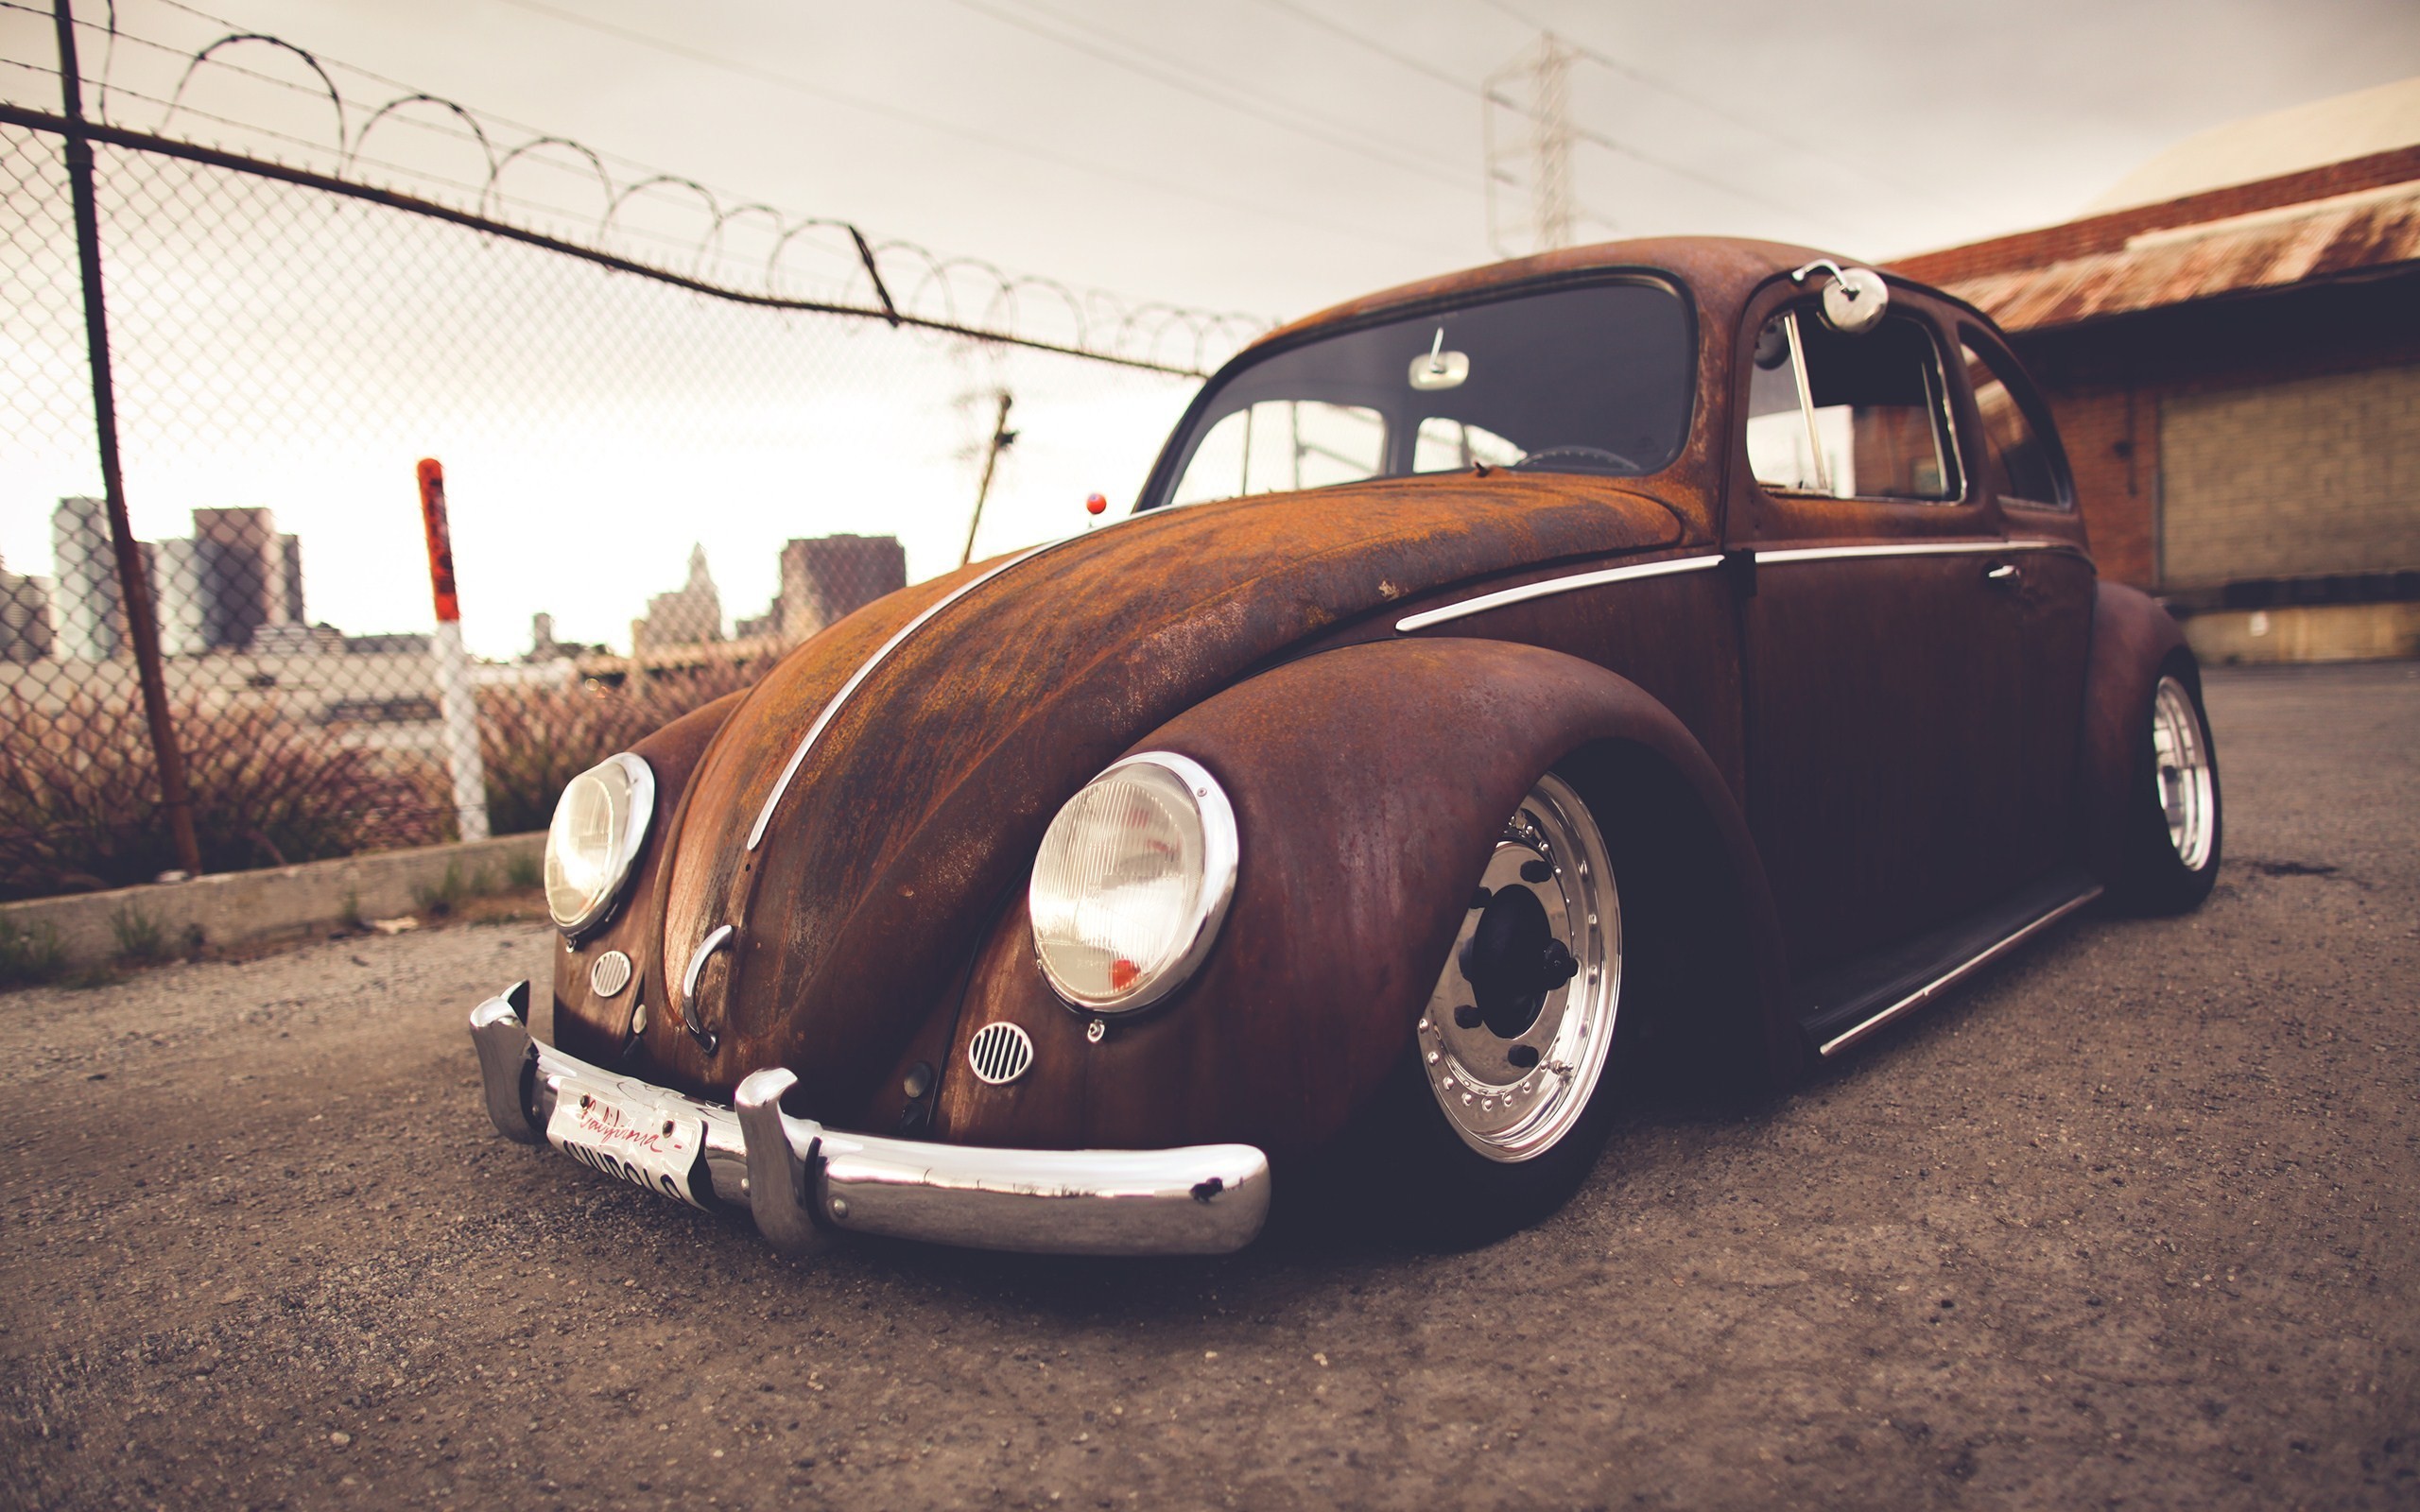 2560x1600 Volkswagen Beetle images Volkswagen Beetle (Volkswagen KÃ¤fer): Time & Rust  HD wallpaper and background photos